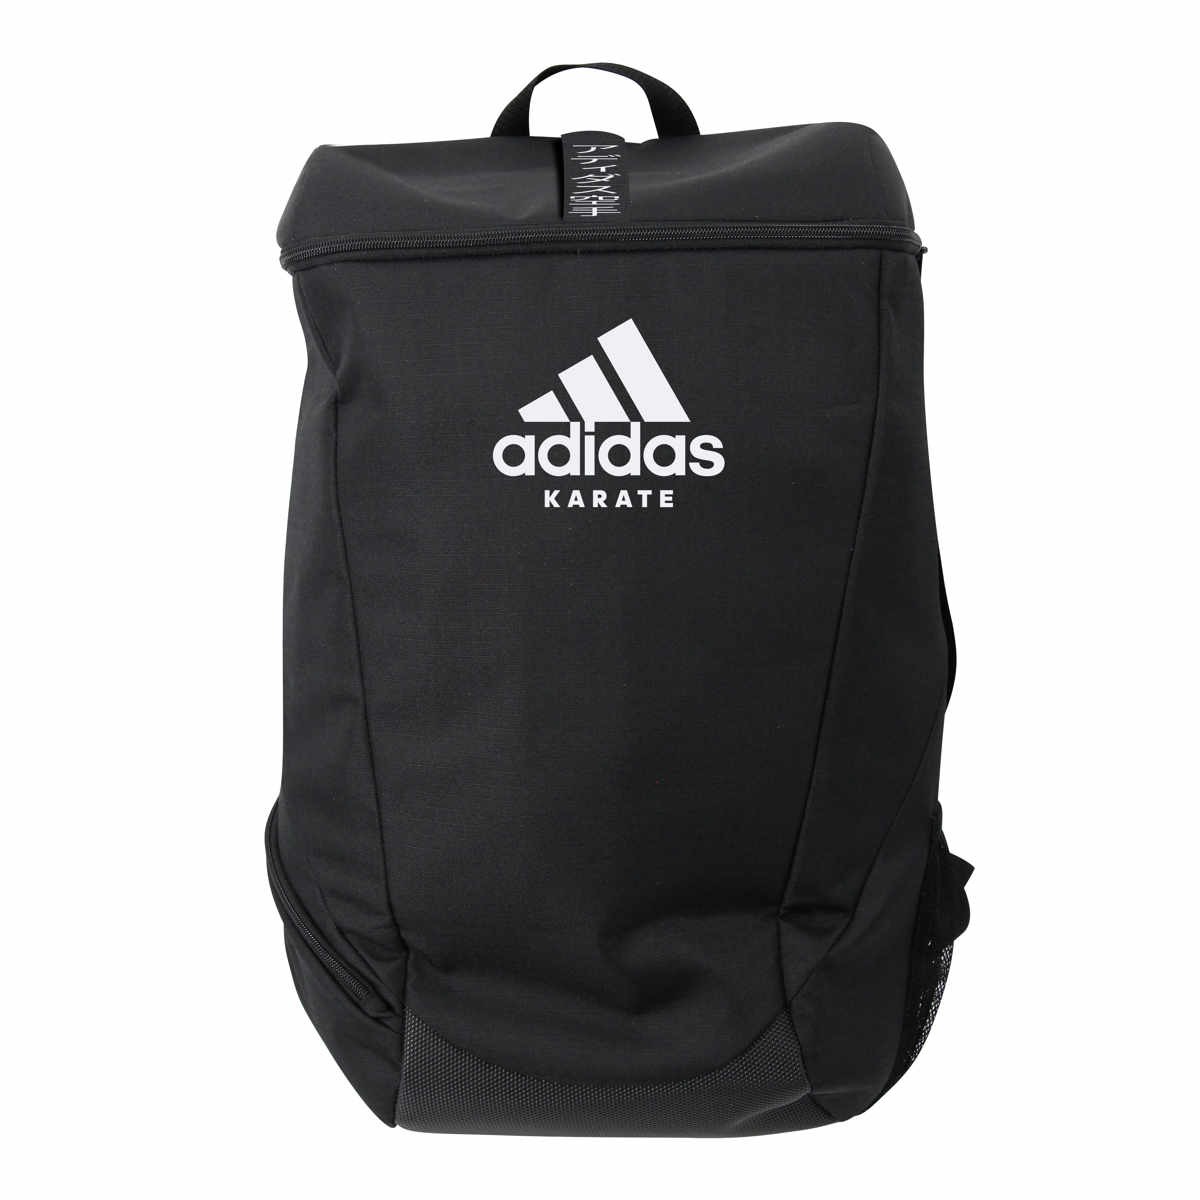 adidas backpack Karate adiACC090, black/white